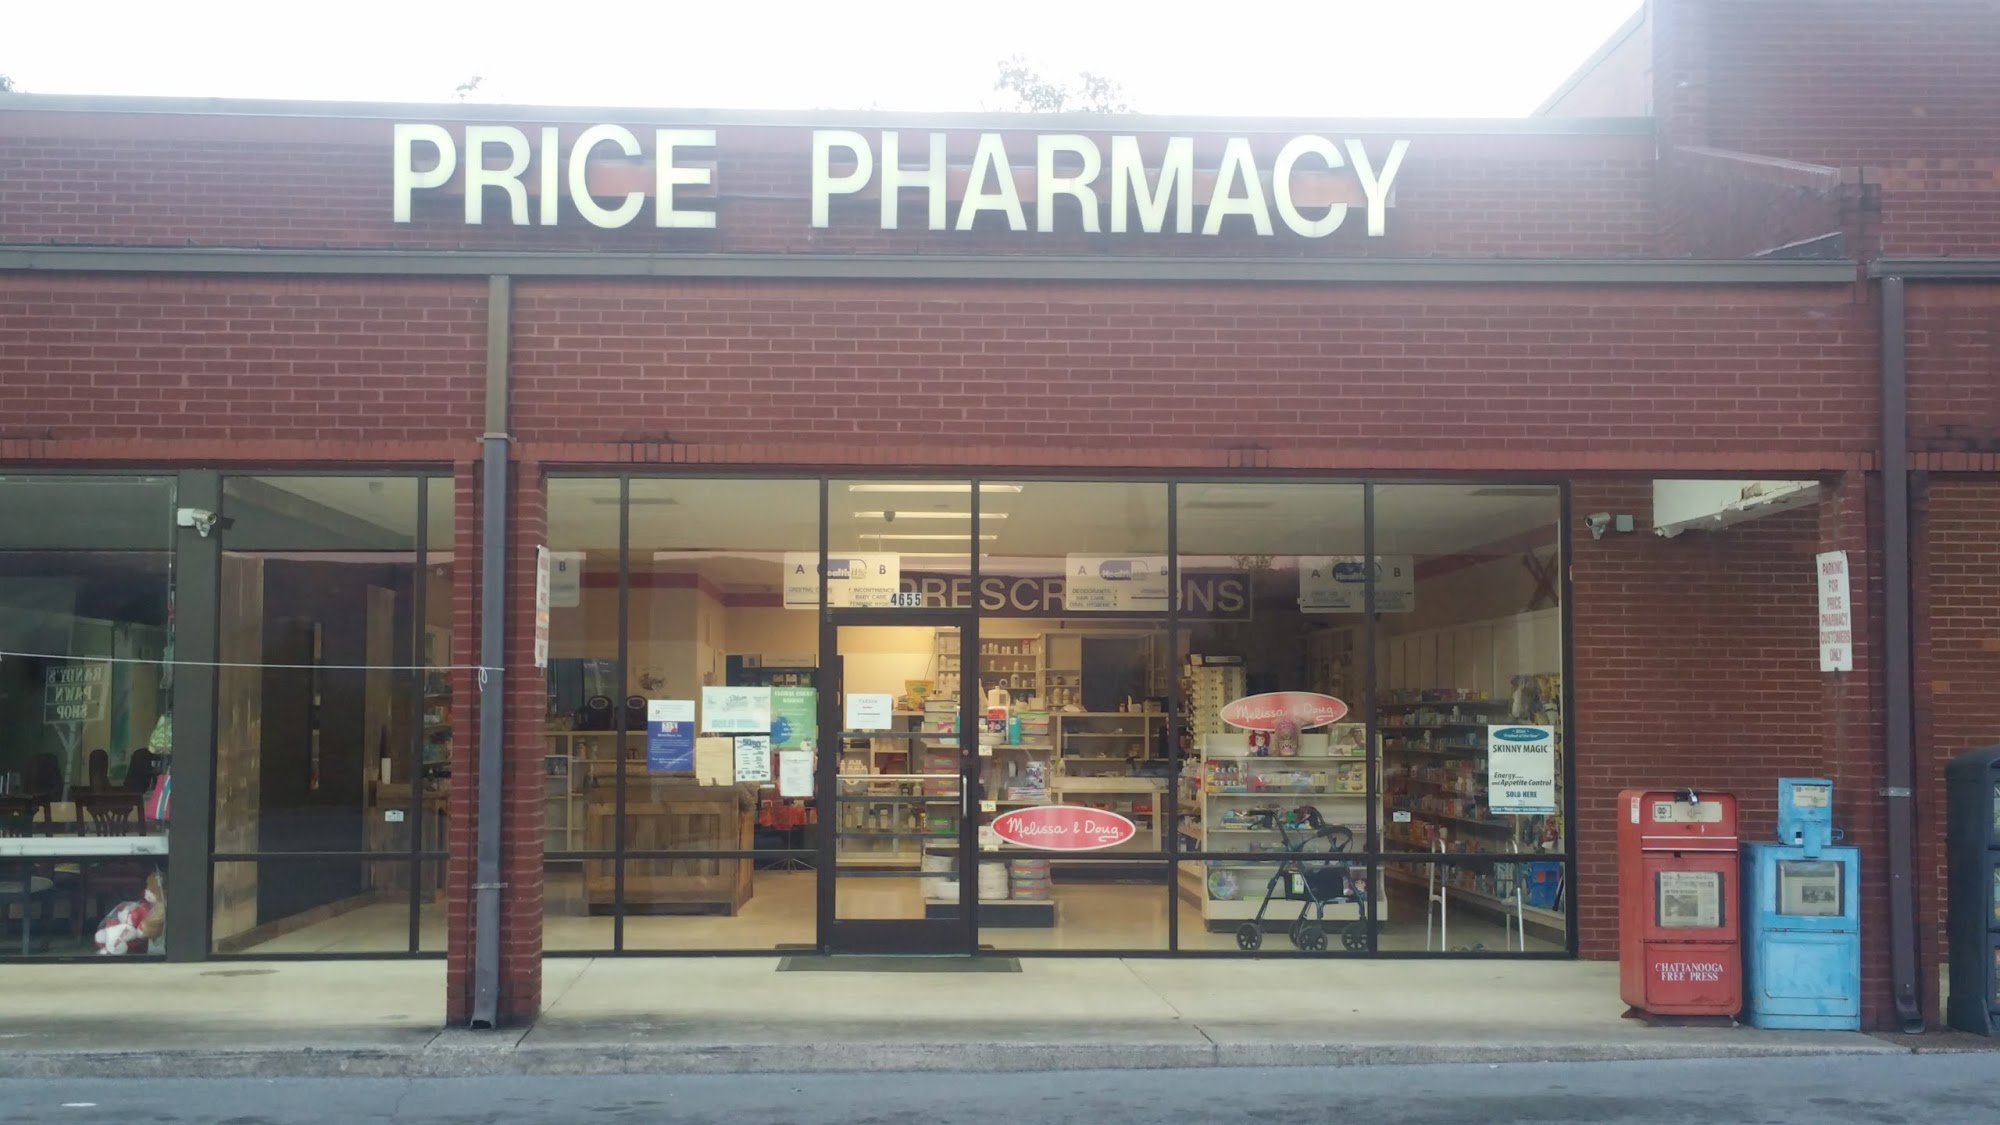 Price Pharmacy